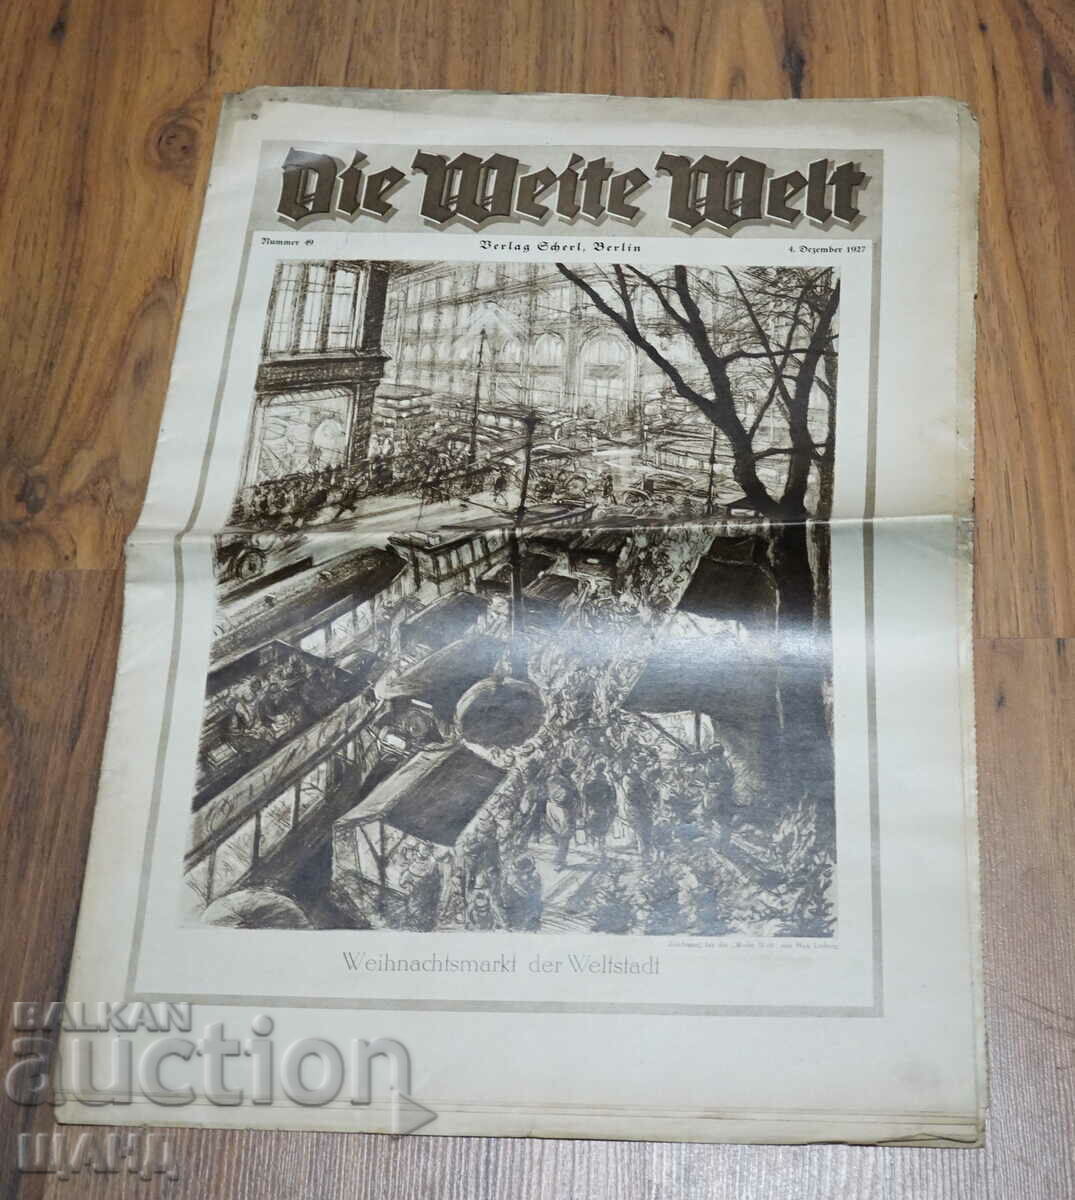 1927 Γερμανική εφημερίδα περιοδικού DIE WEITE WELT τεύχος 49